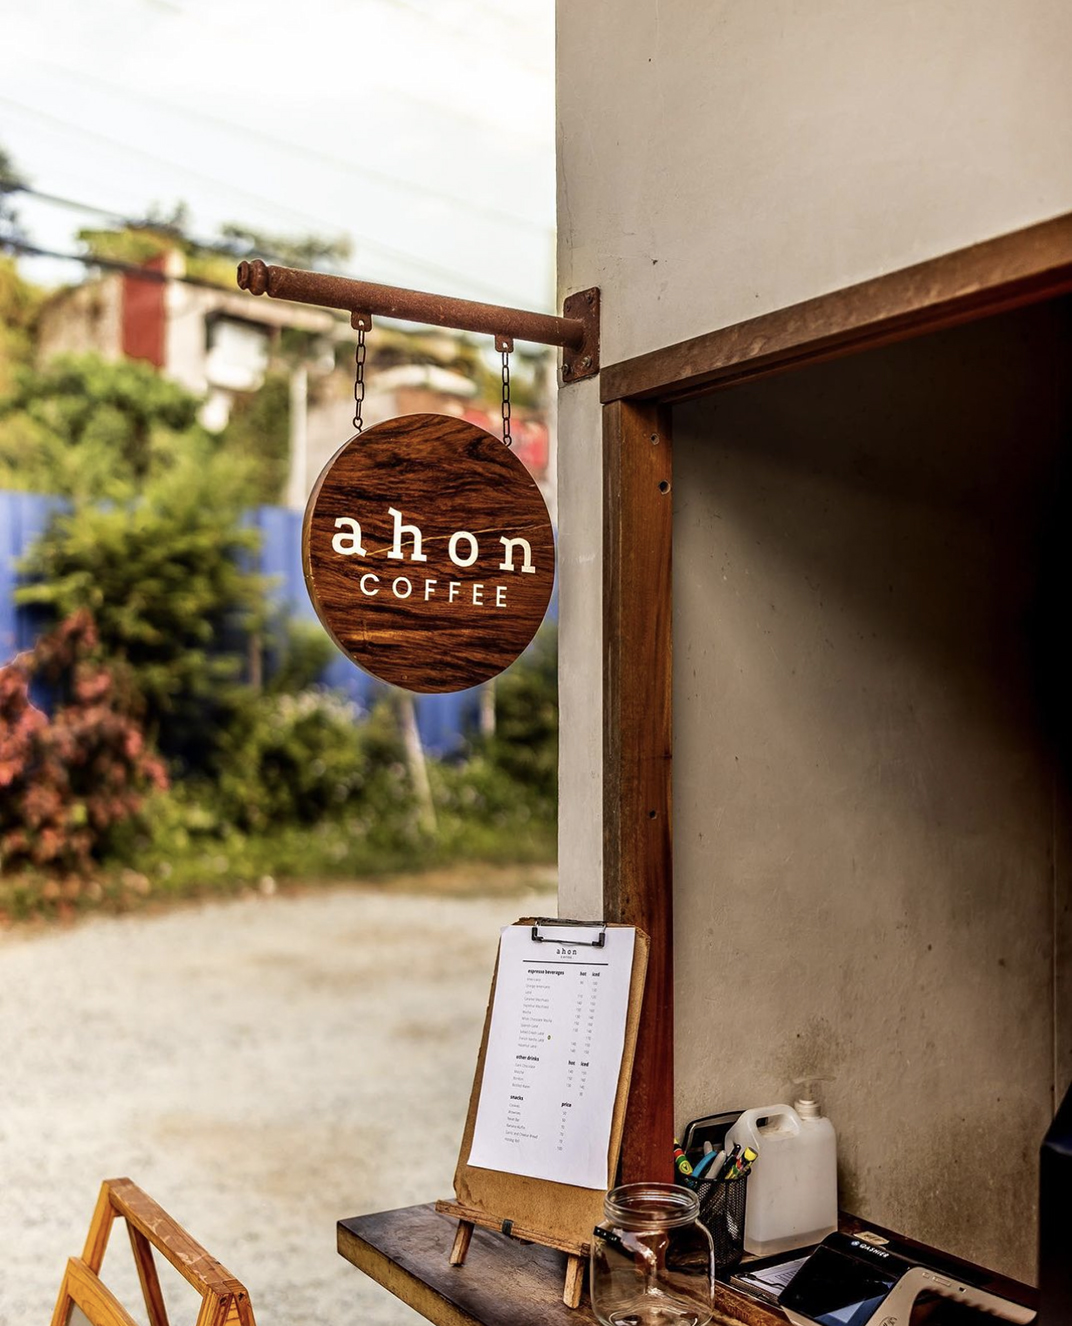 山里的咖啡店Ahon Coffee 菲律宾 北京 上海 珠海 成都 武汉 杭州 佛山 香港 澳门 logo设计 vi设计 空间设计